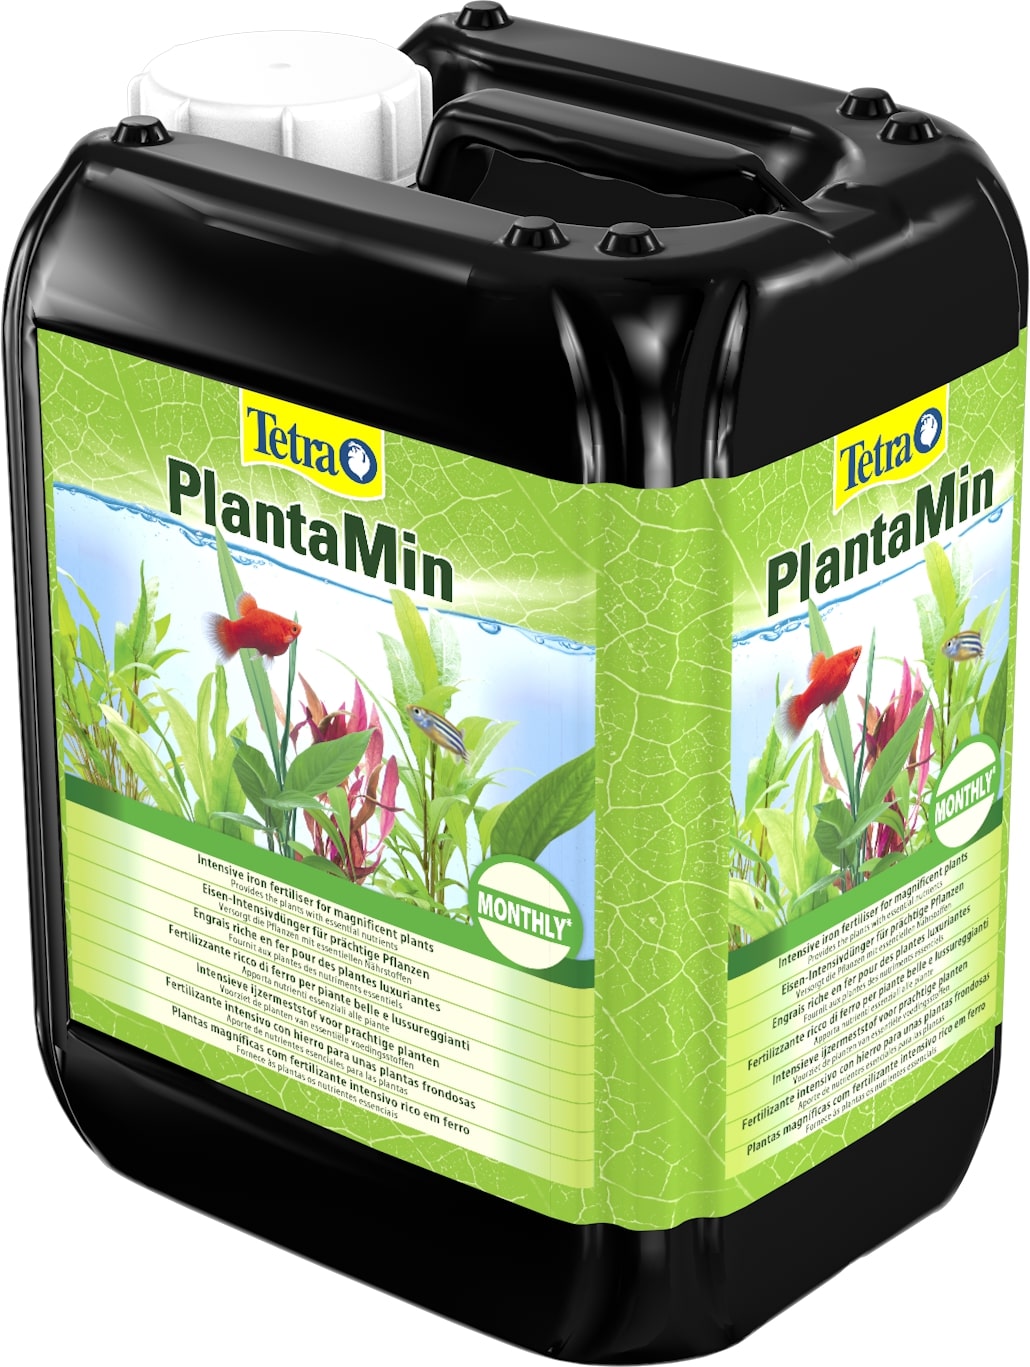 TETRA PlantaMin 5 L fertilisant universel foliaire pour plantes d